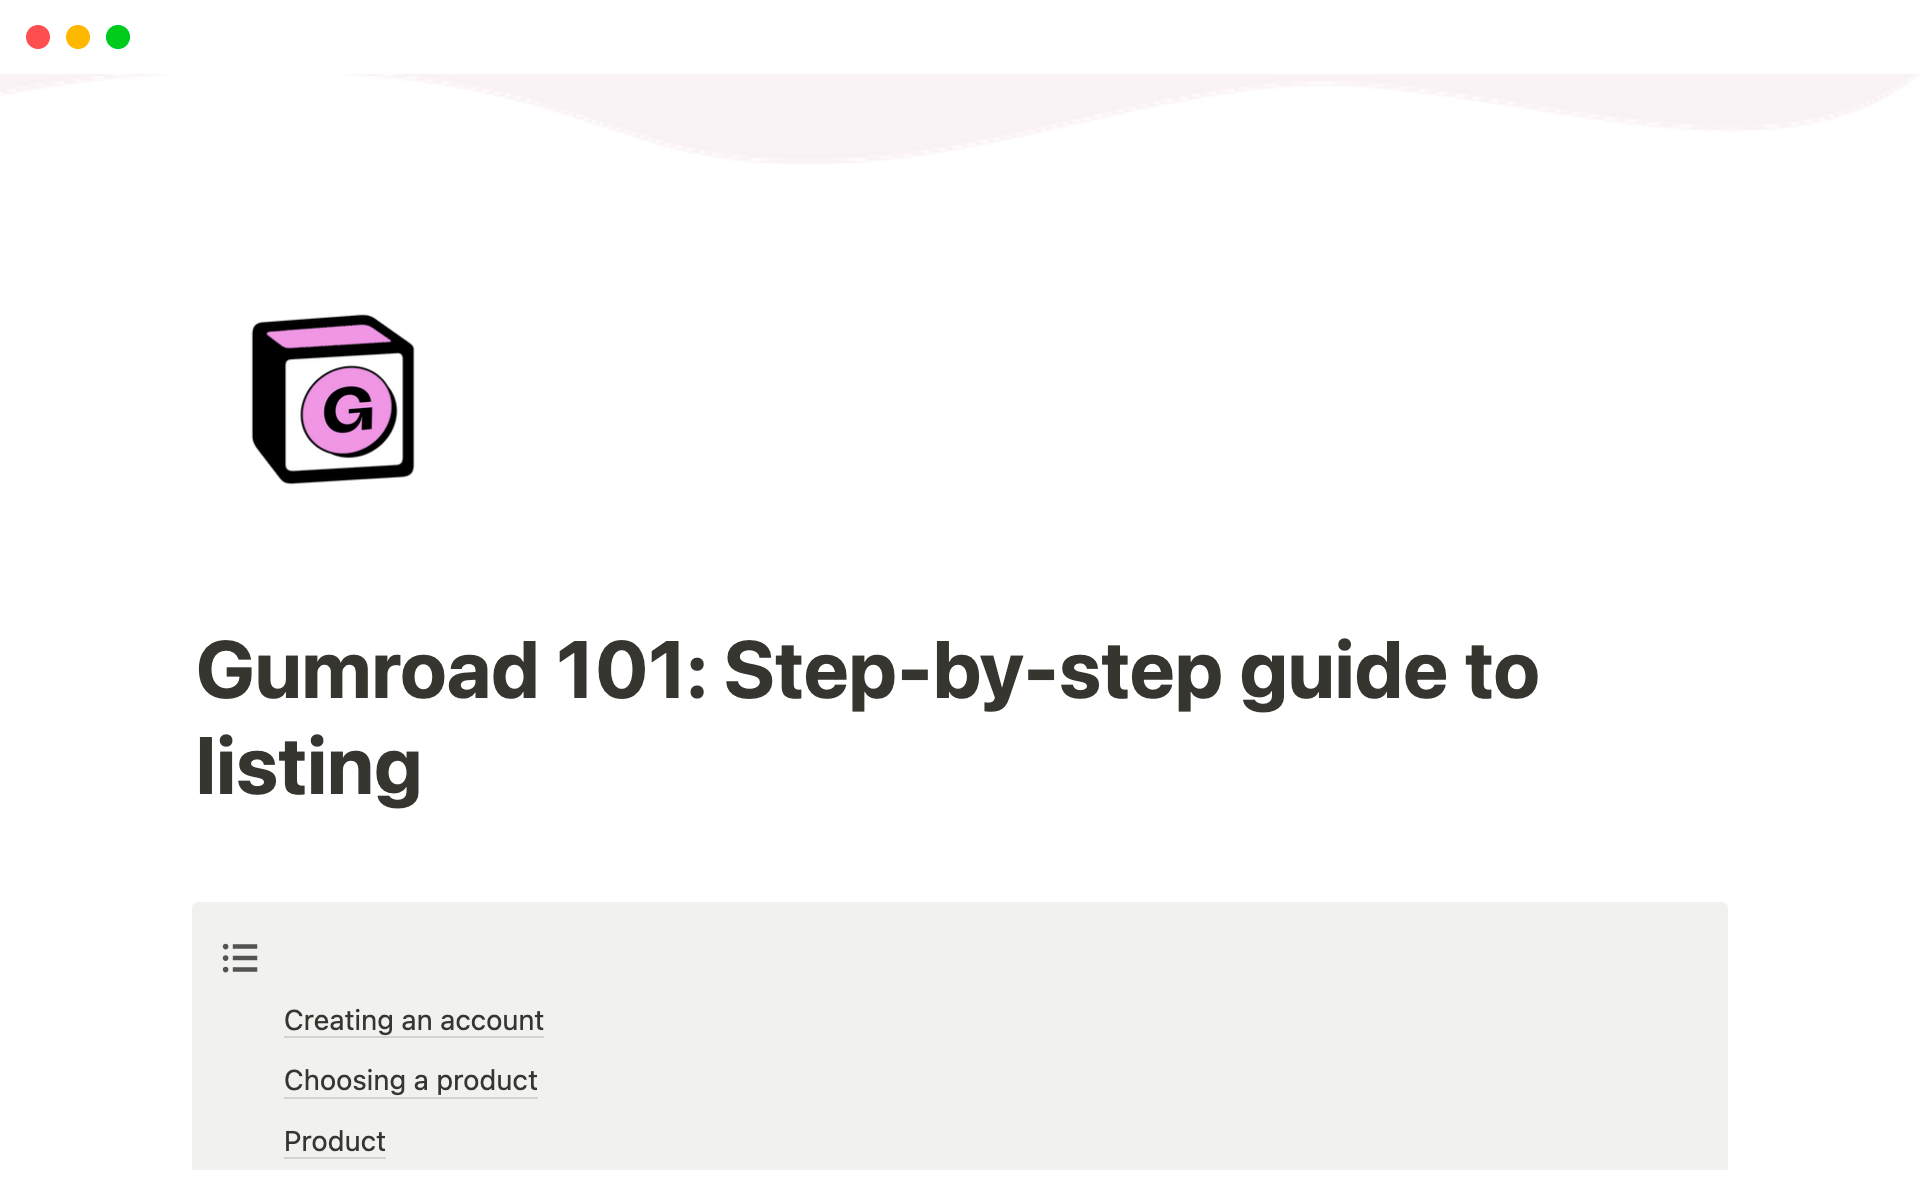 Uma prévia do modelo para Gumroad 101: Complete Listing Guide by Organisedly